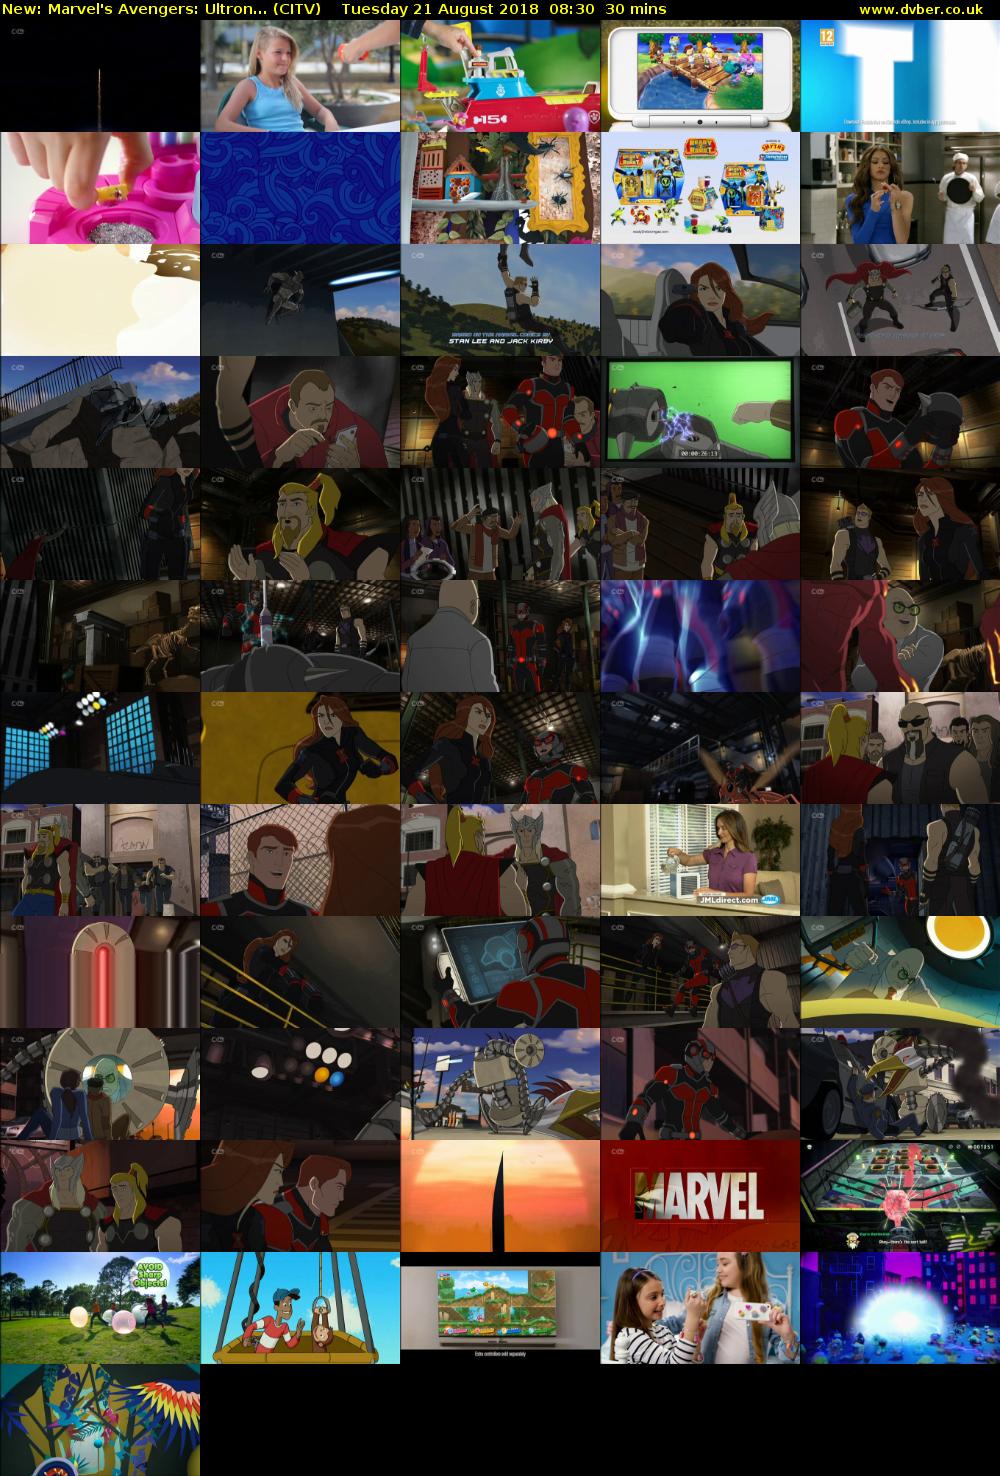 Marvel's Avengers: Ultron... (CITV) Tuesday 21 August 2018 08:30 - 09:00